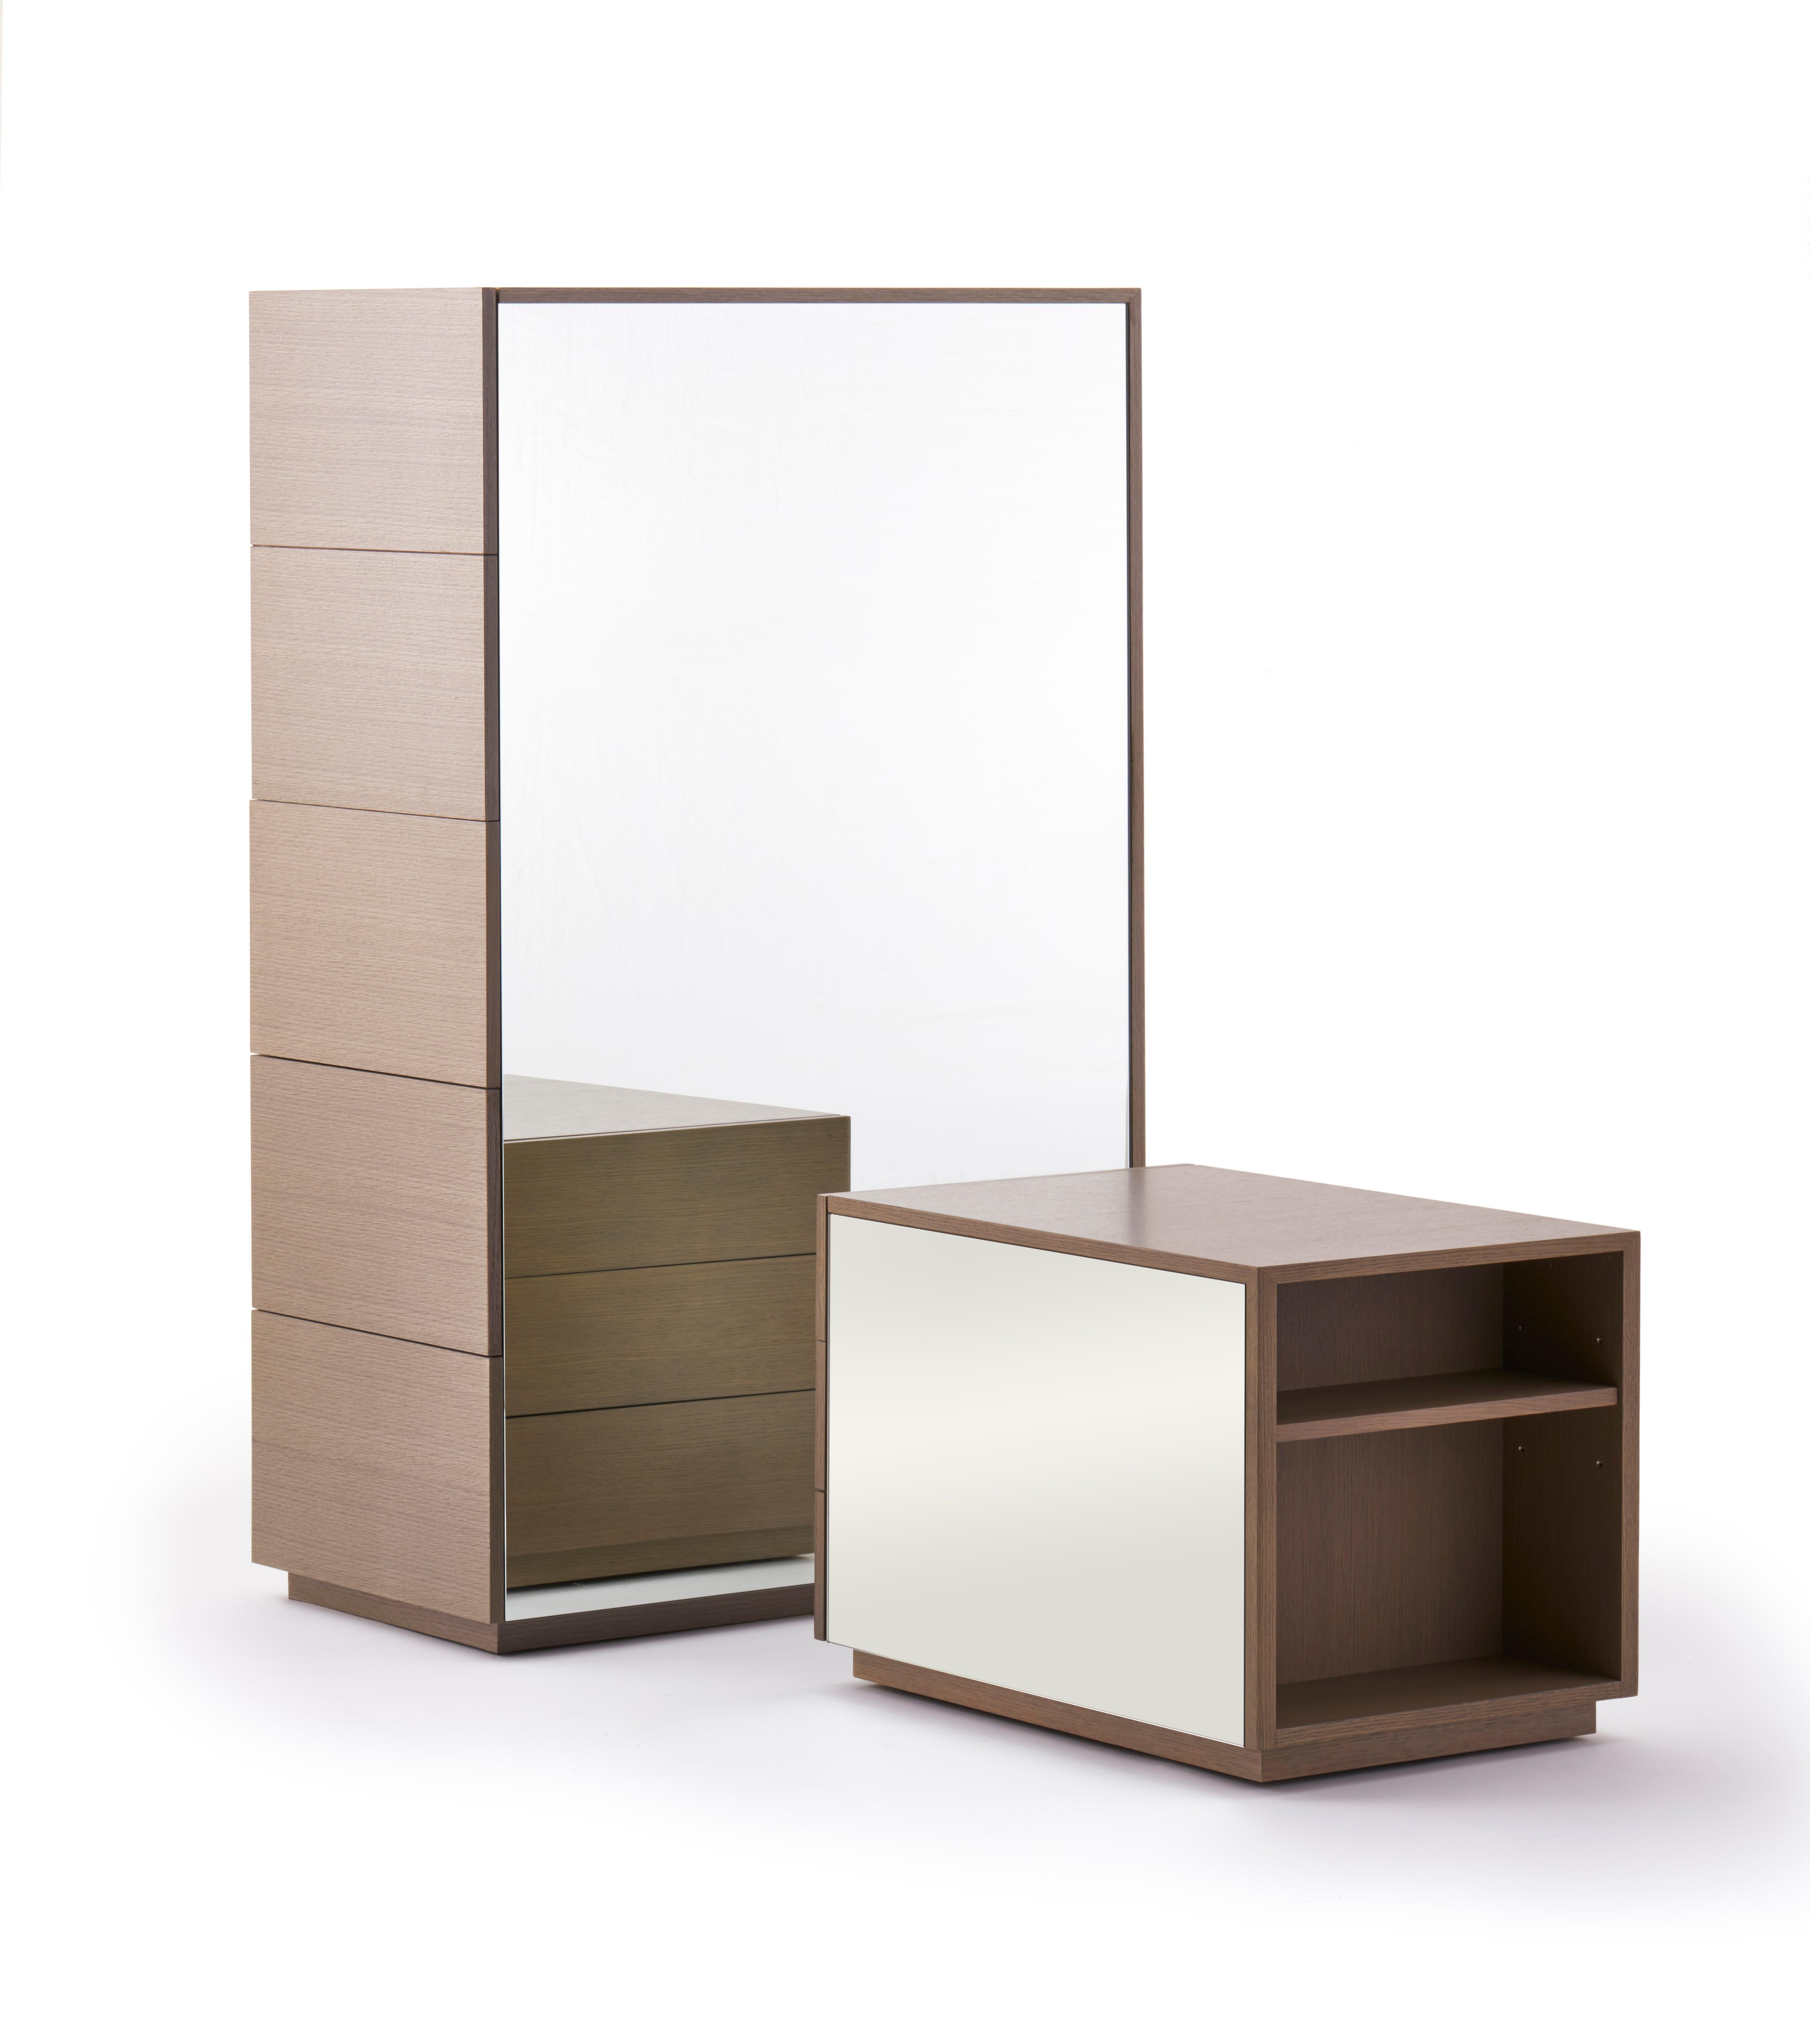 N° CG-001

L'armoire à miroirs réunit de nombreuses fonctions en une seule unité. Disponible avec des tiroirs ou des étagères accessibles par les côtés, il est doté d'une façade et d'un fond en miroir qui reflètent la lumière et le mouvement dans